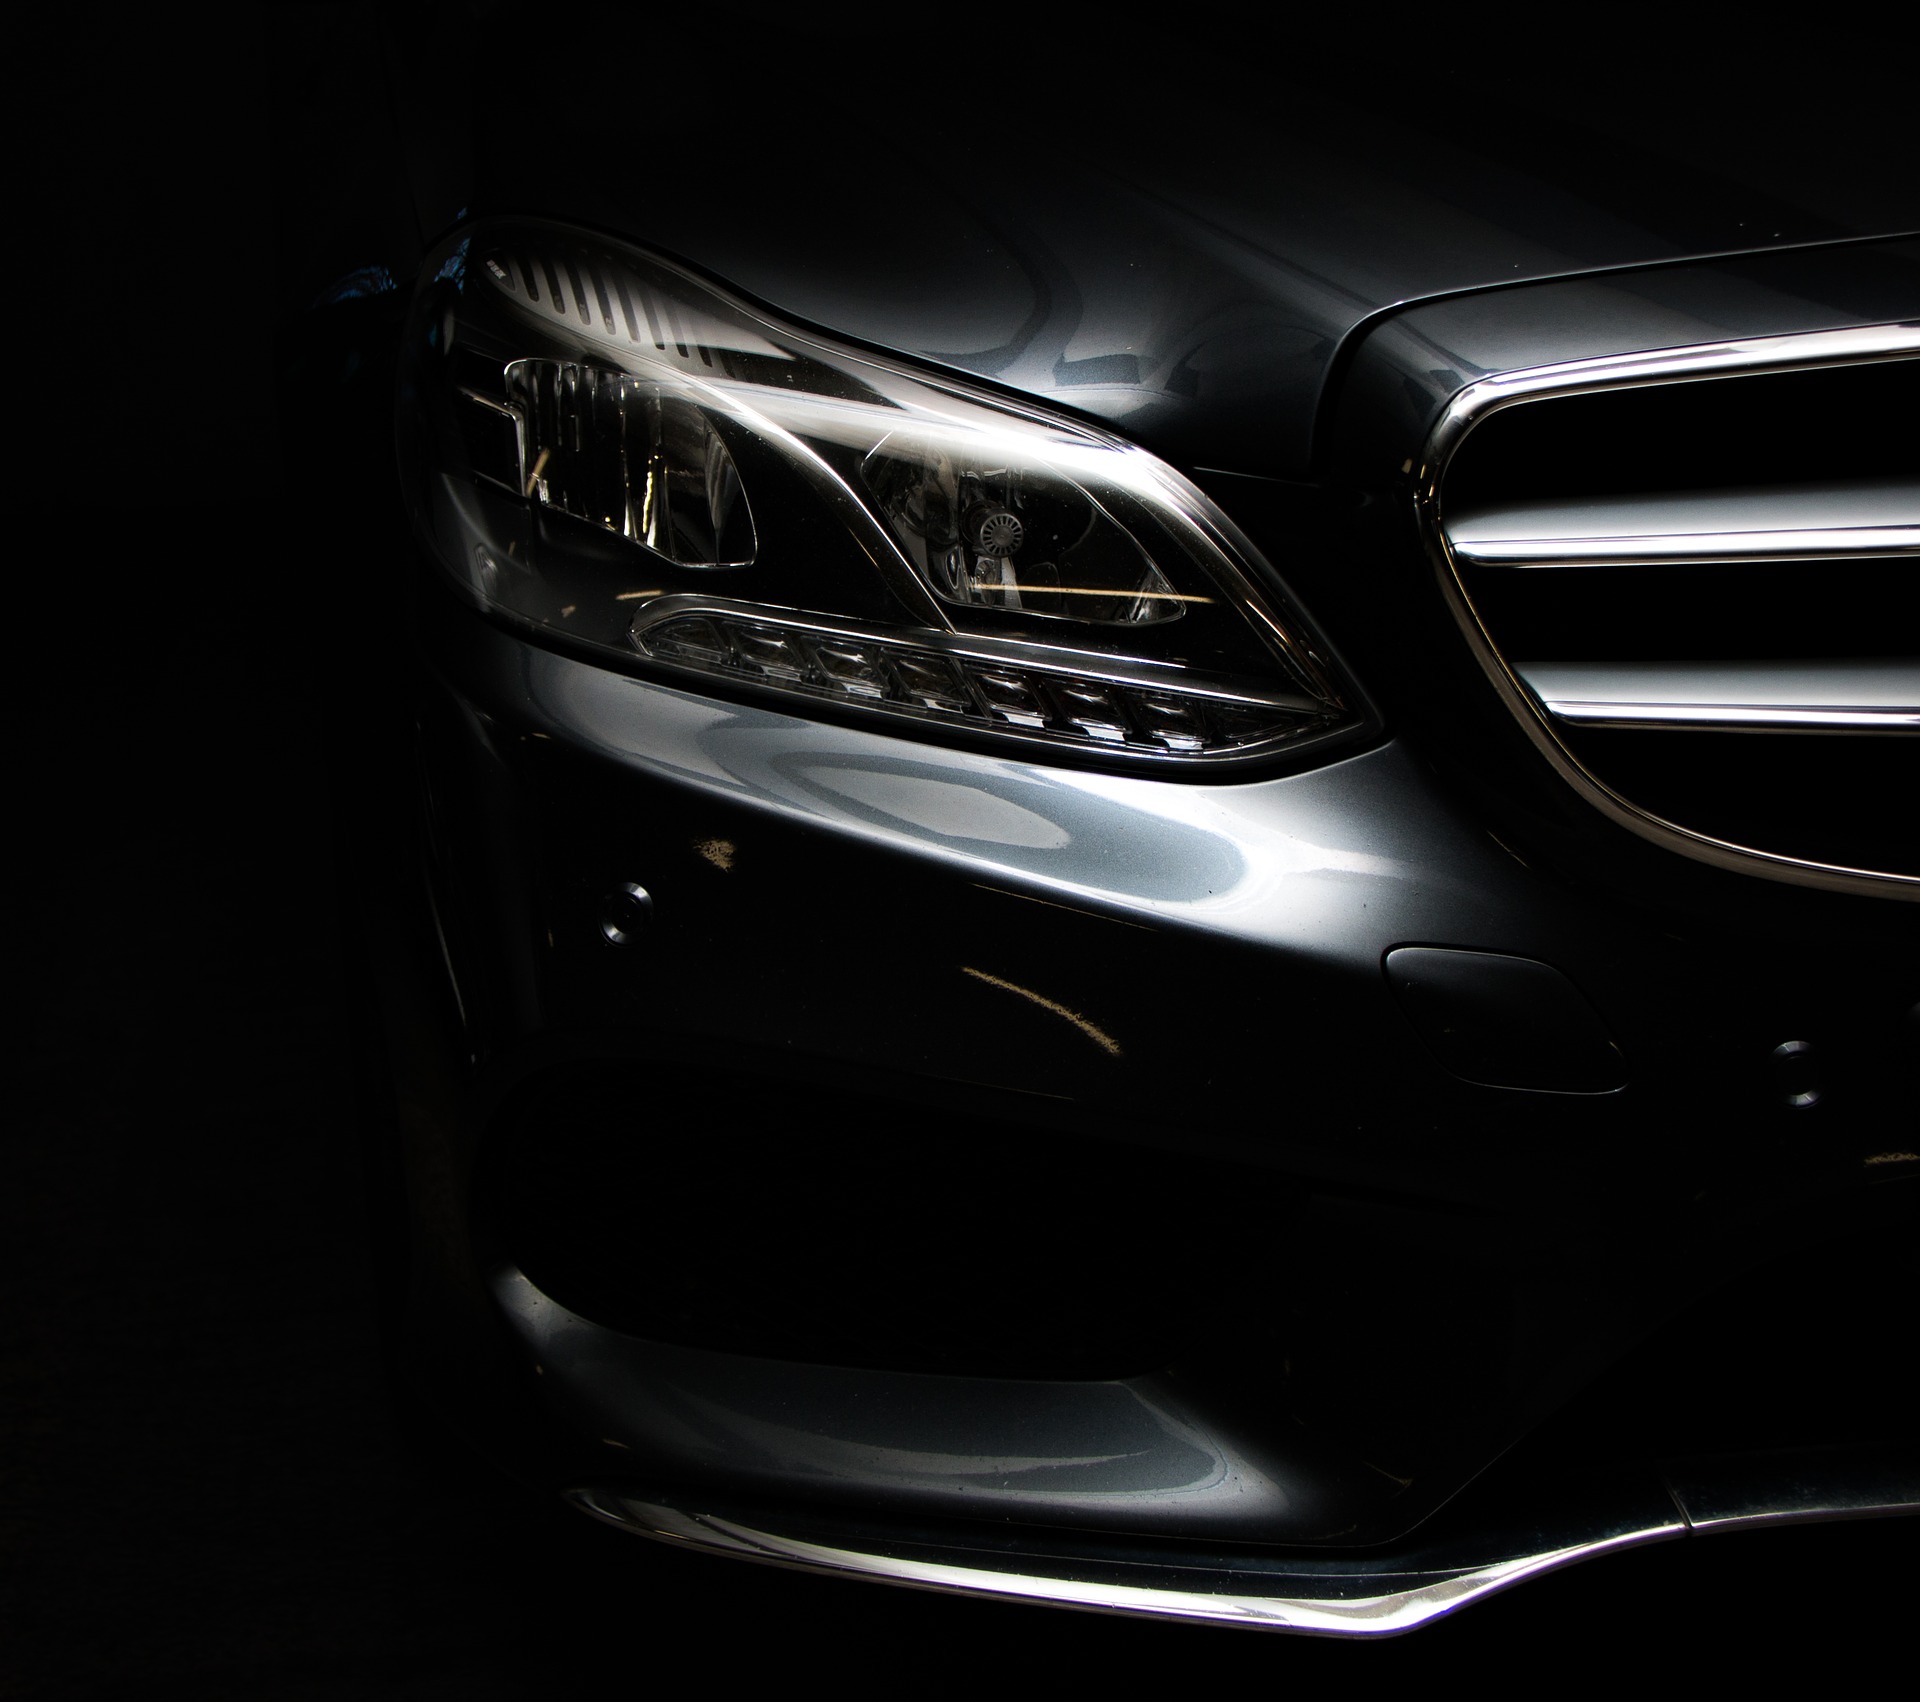  Rapex segnala richiamo per i modelli Mercedes Classe E e CLS.